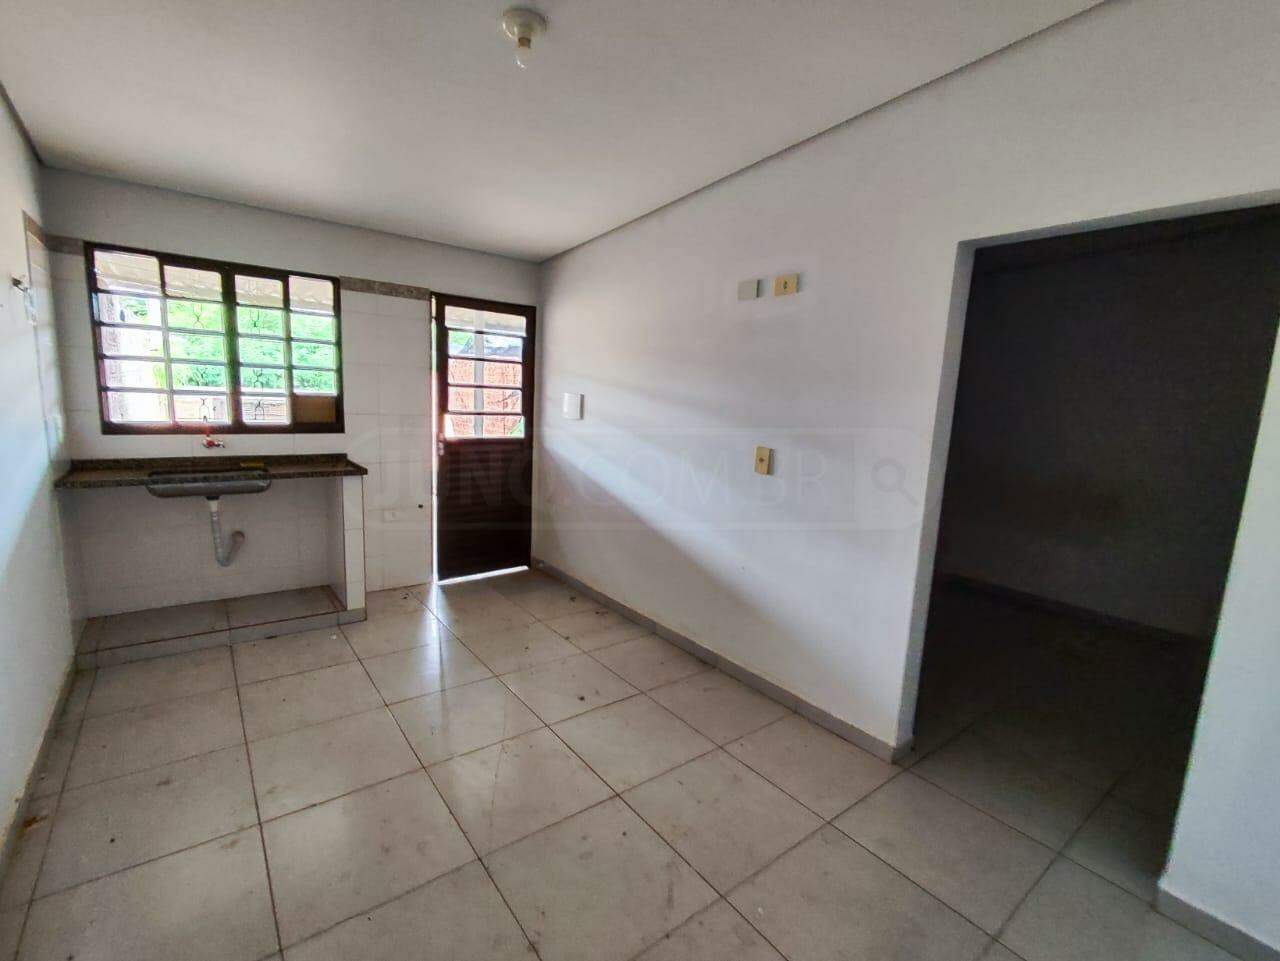 Casa à venda, 1 quarto, sendo 1 suíte, 2 vagas, no bairro Jardim São Carlos em Rio das Pedras - SP